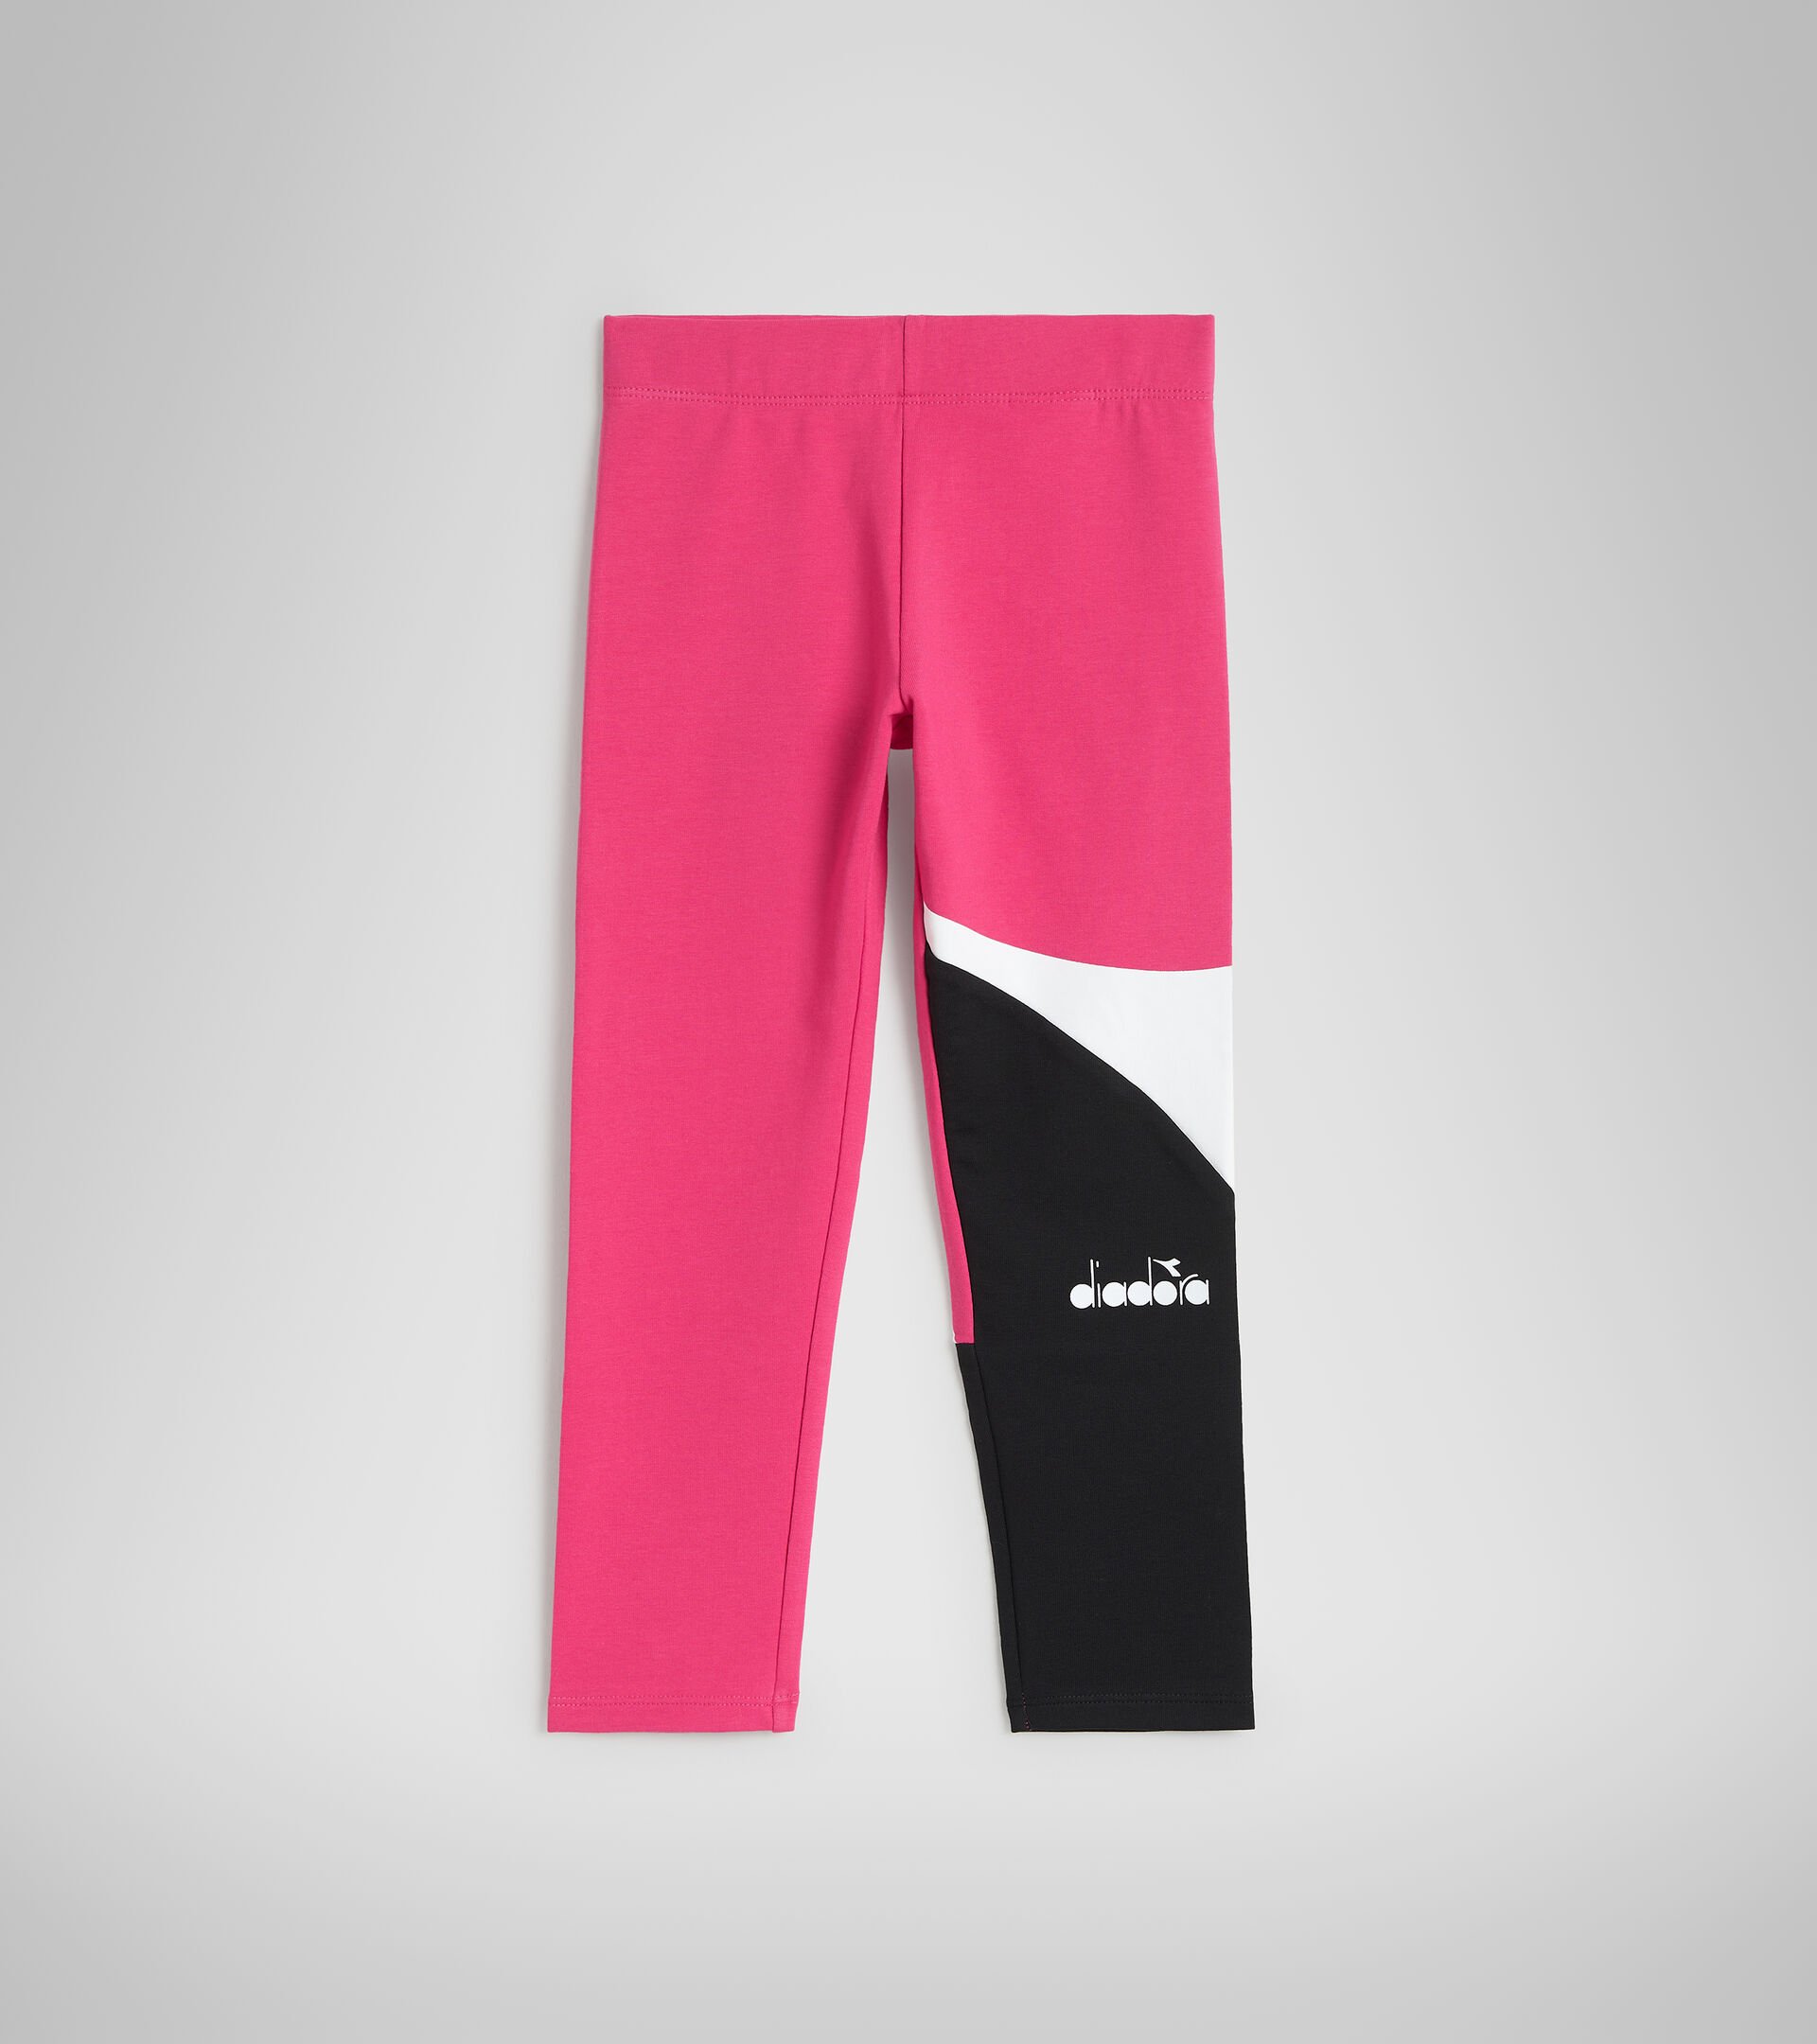 Stretch cotton terrycloth sports leggings - Girls JG.LEGGINGS POWER LOGO SHOCKING PINK - Diadora